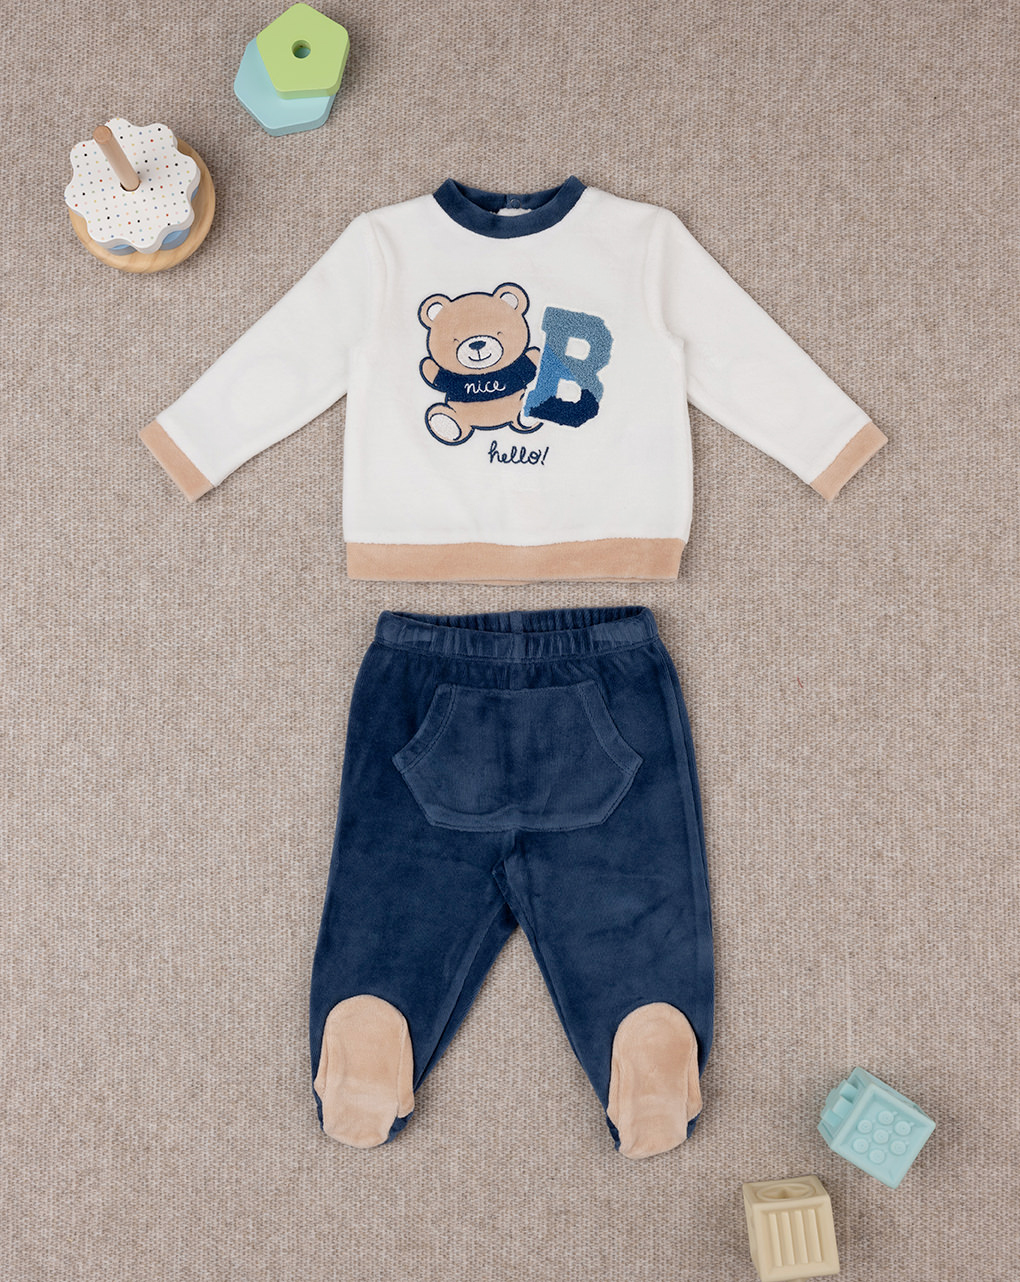 βρεφικό σετ μπλούζα και γκέτα με αρκουδάκι για αγόρι - Prénatal